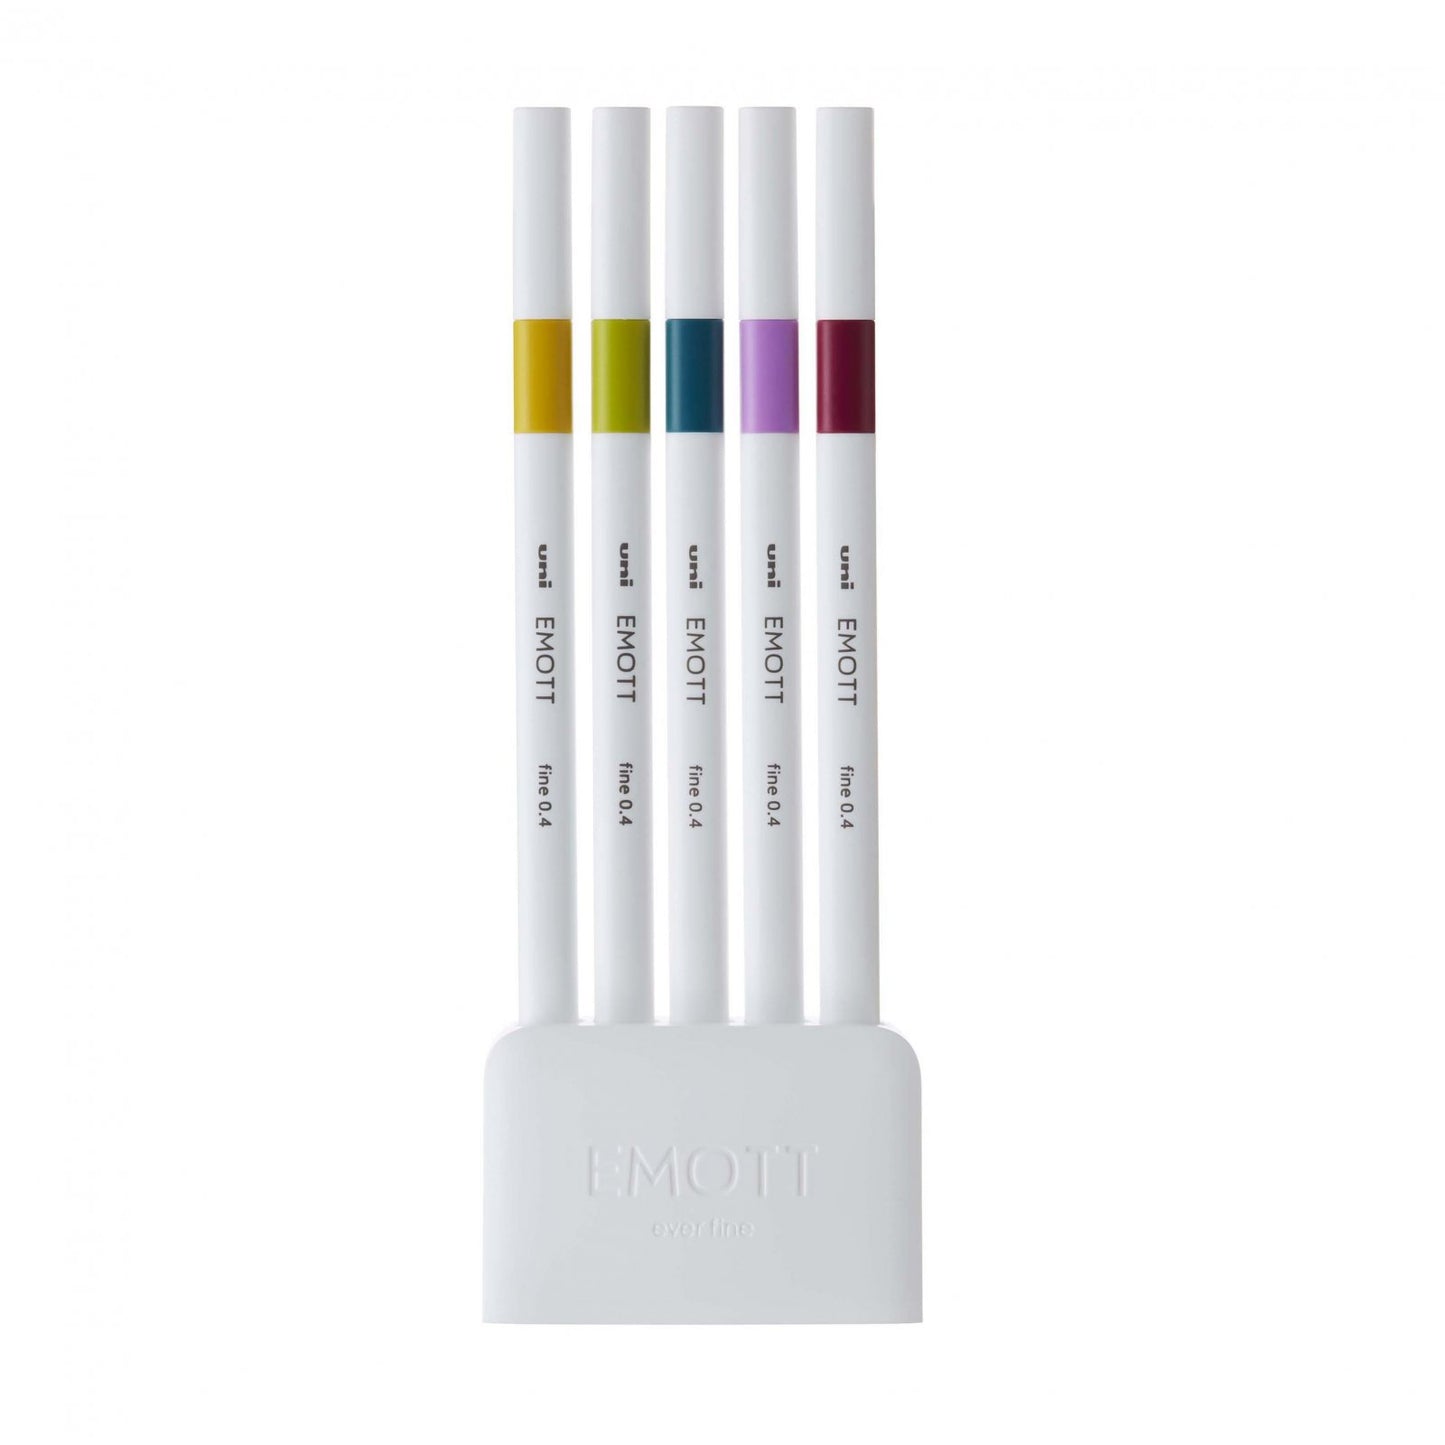 Uni - Emott 5 Color Sets - Fineliner Markers 0.4mm